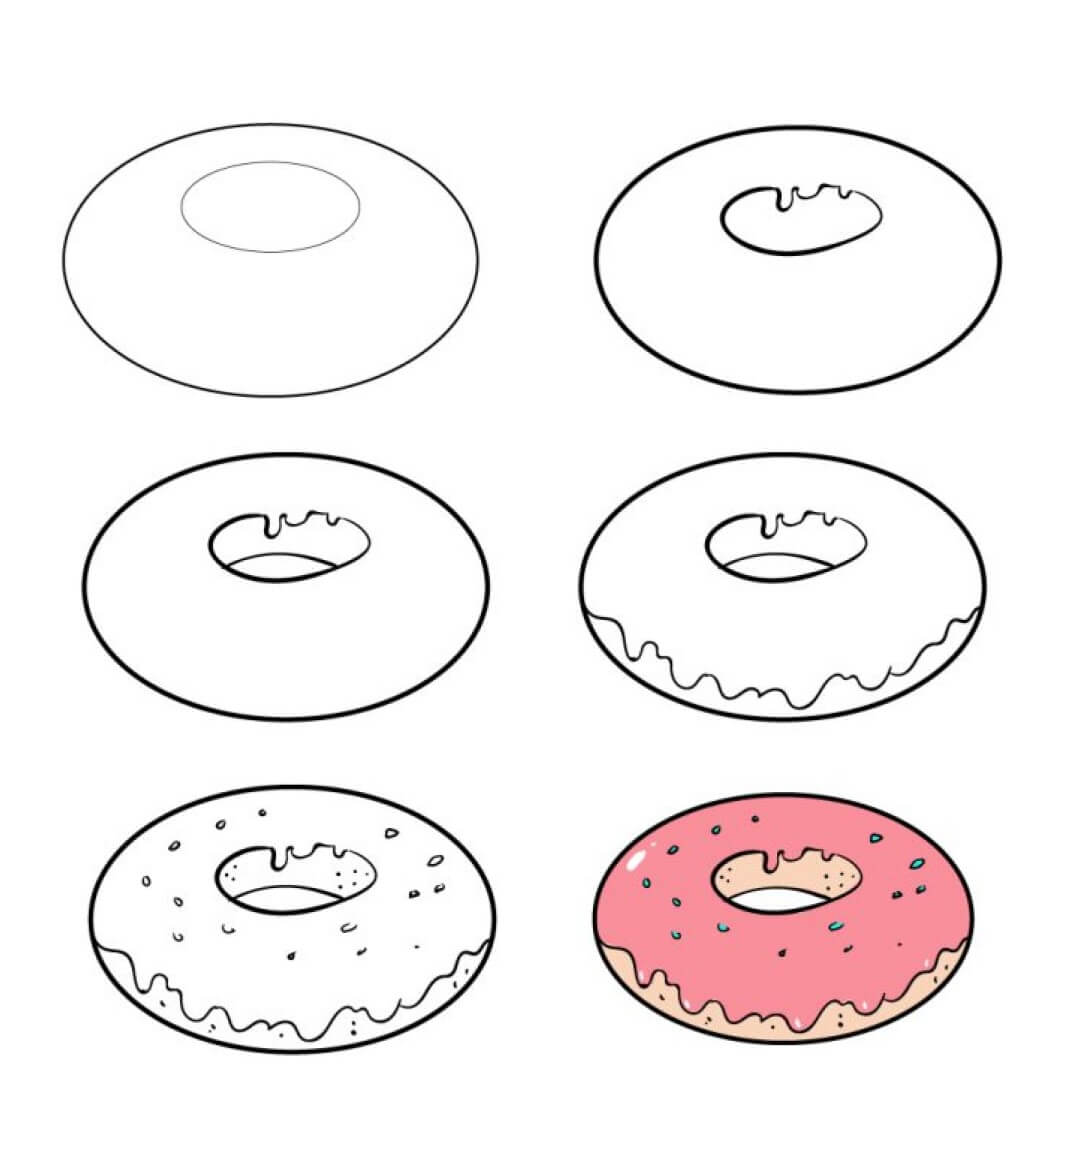 Çörek fikri (2) çizimi